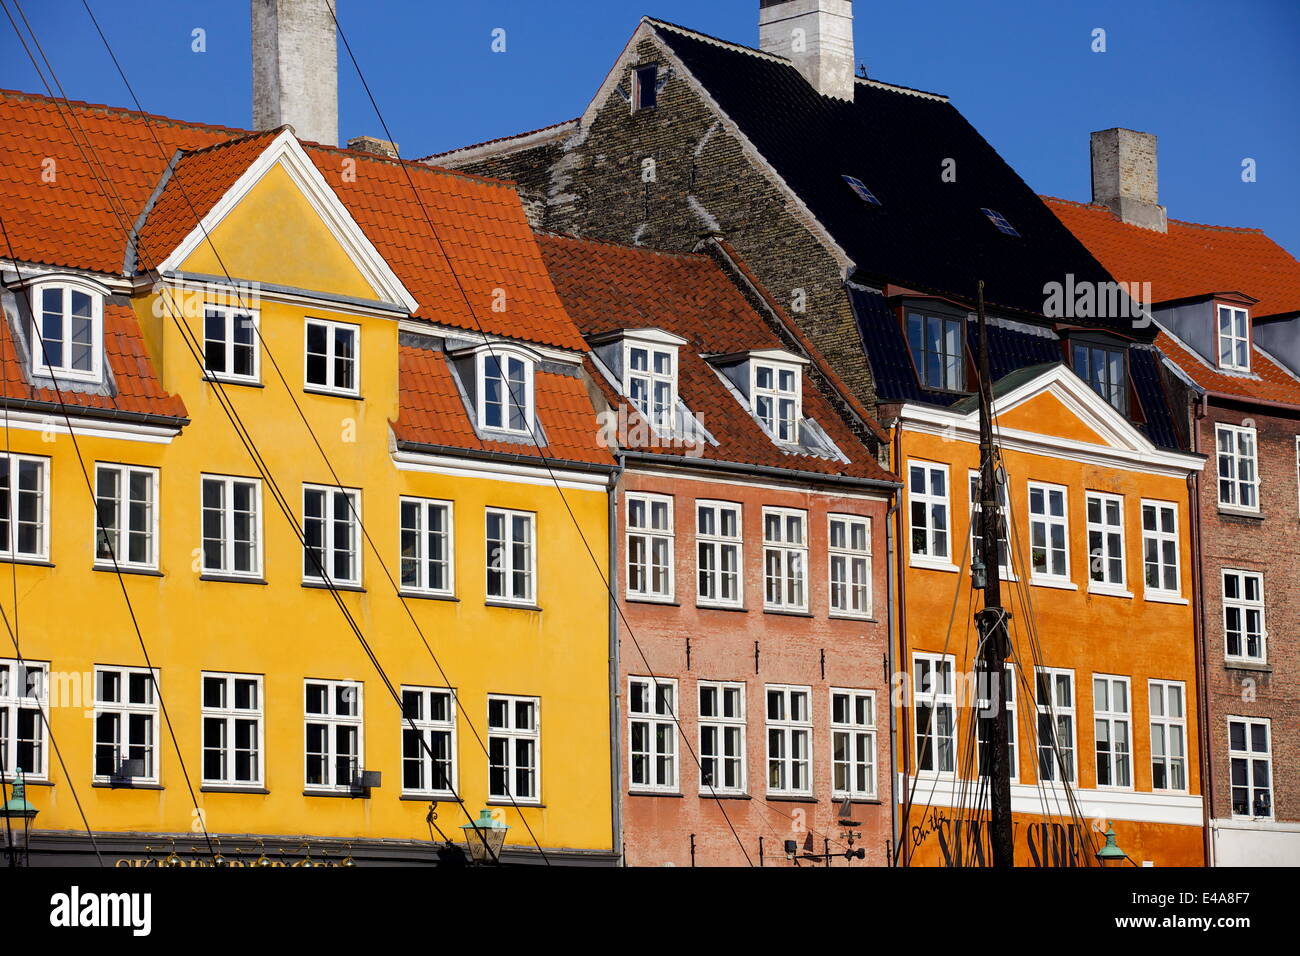 Old buildings in famous Nyhavn harbour area of Copenhagen, Denmark, Scandinavia, Europe Stock Photo